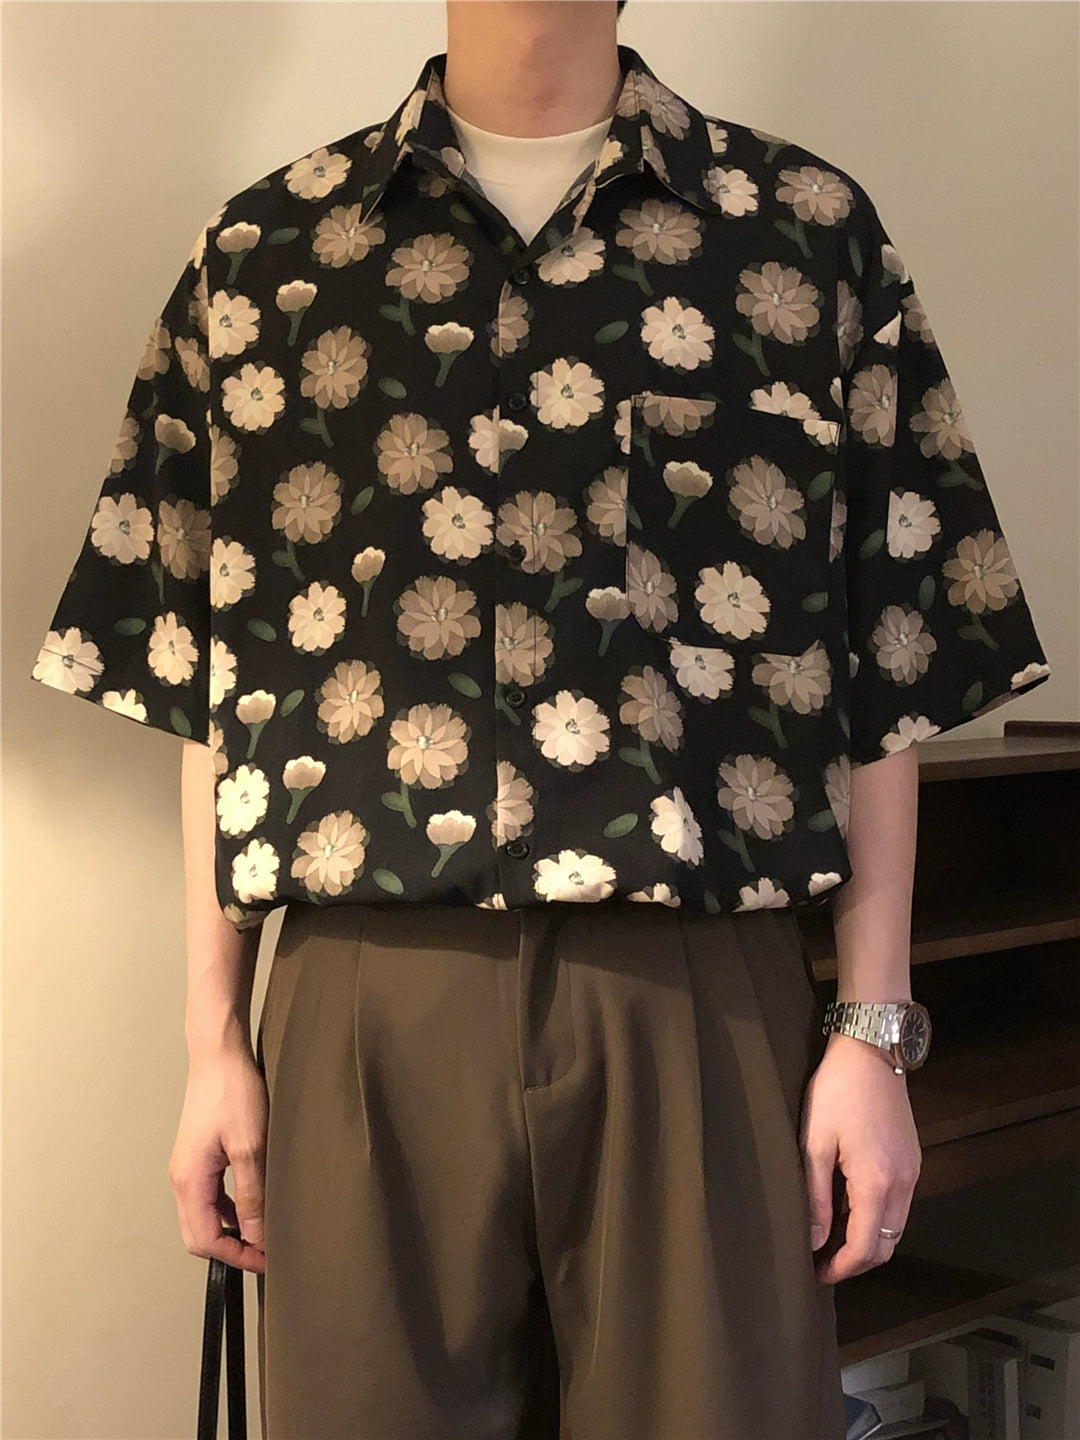 Nagawl Floral Pattern Shirt